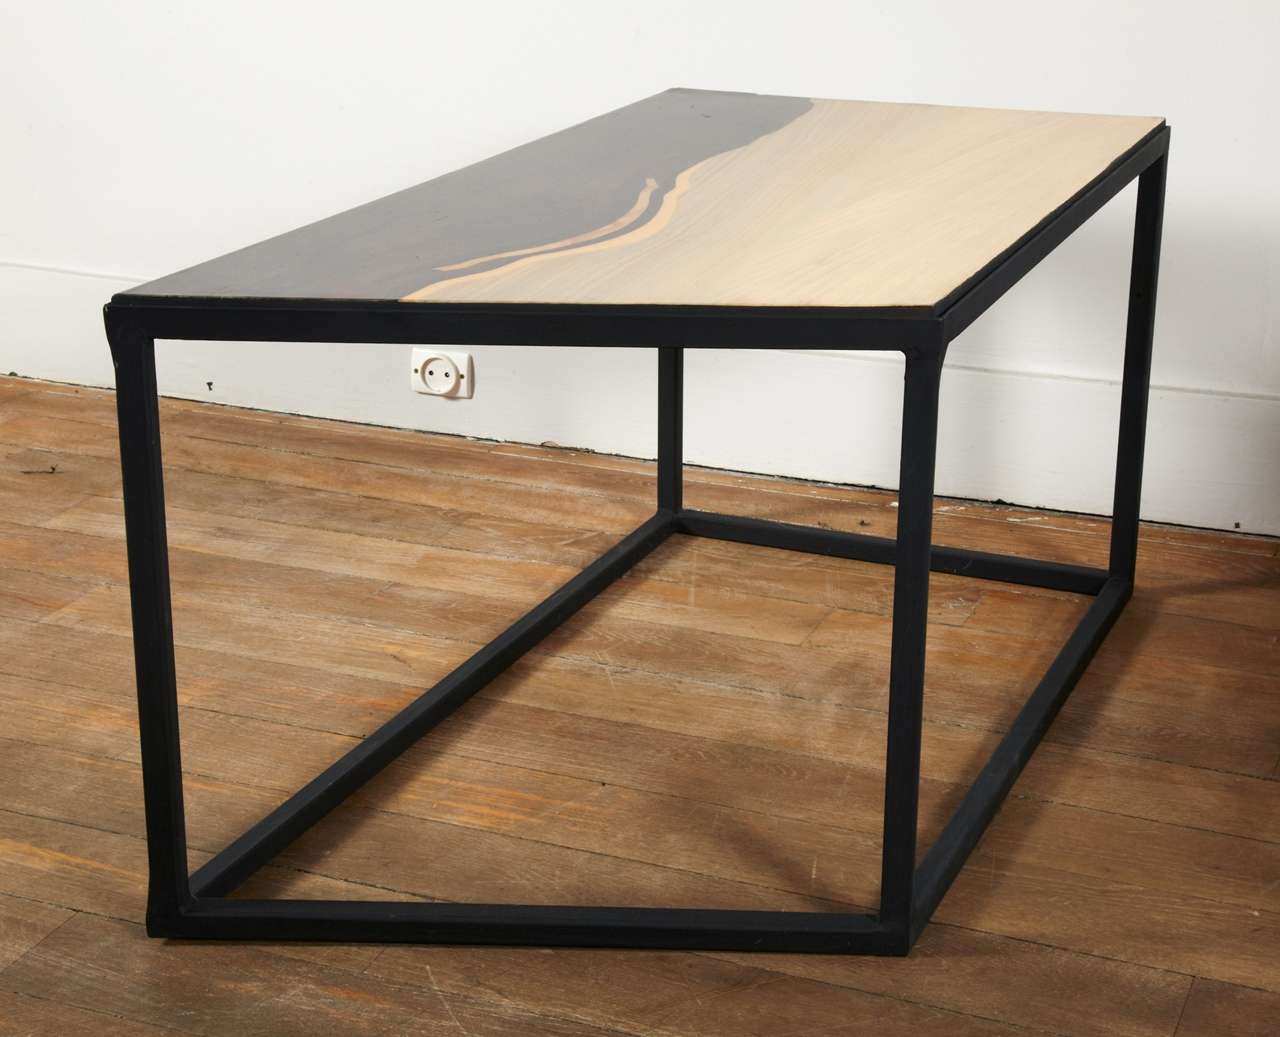 An Unusual Pair Of End  Tables Displaying Wood Veneered Tops 1